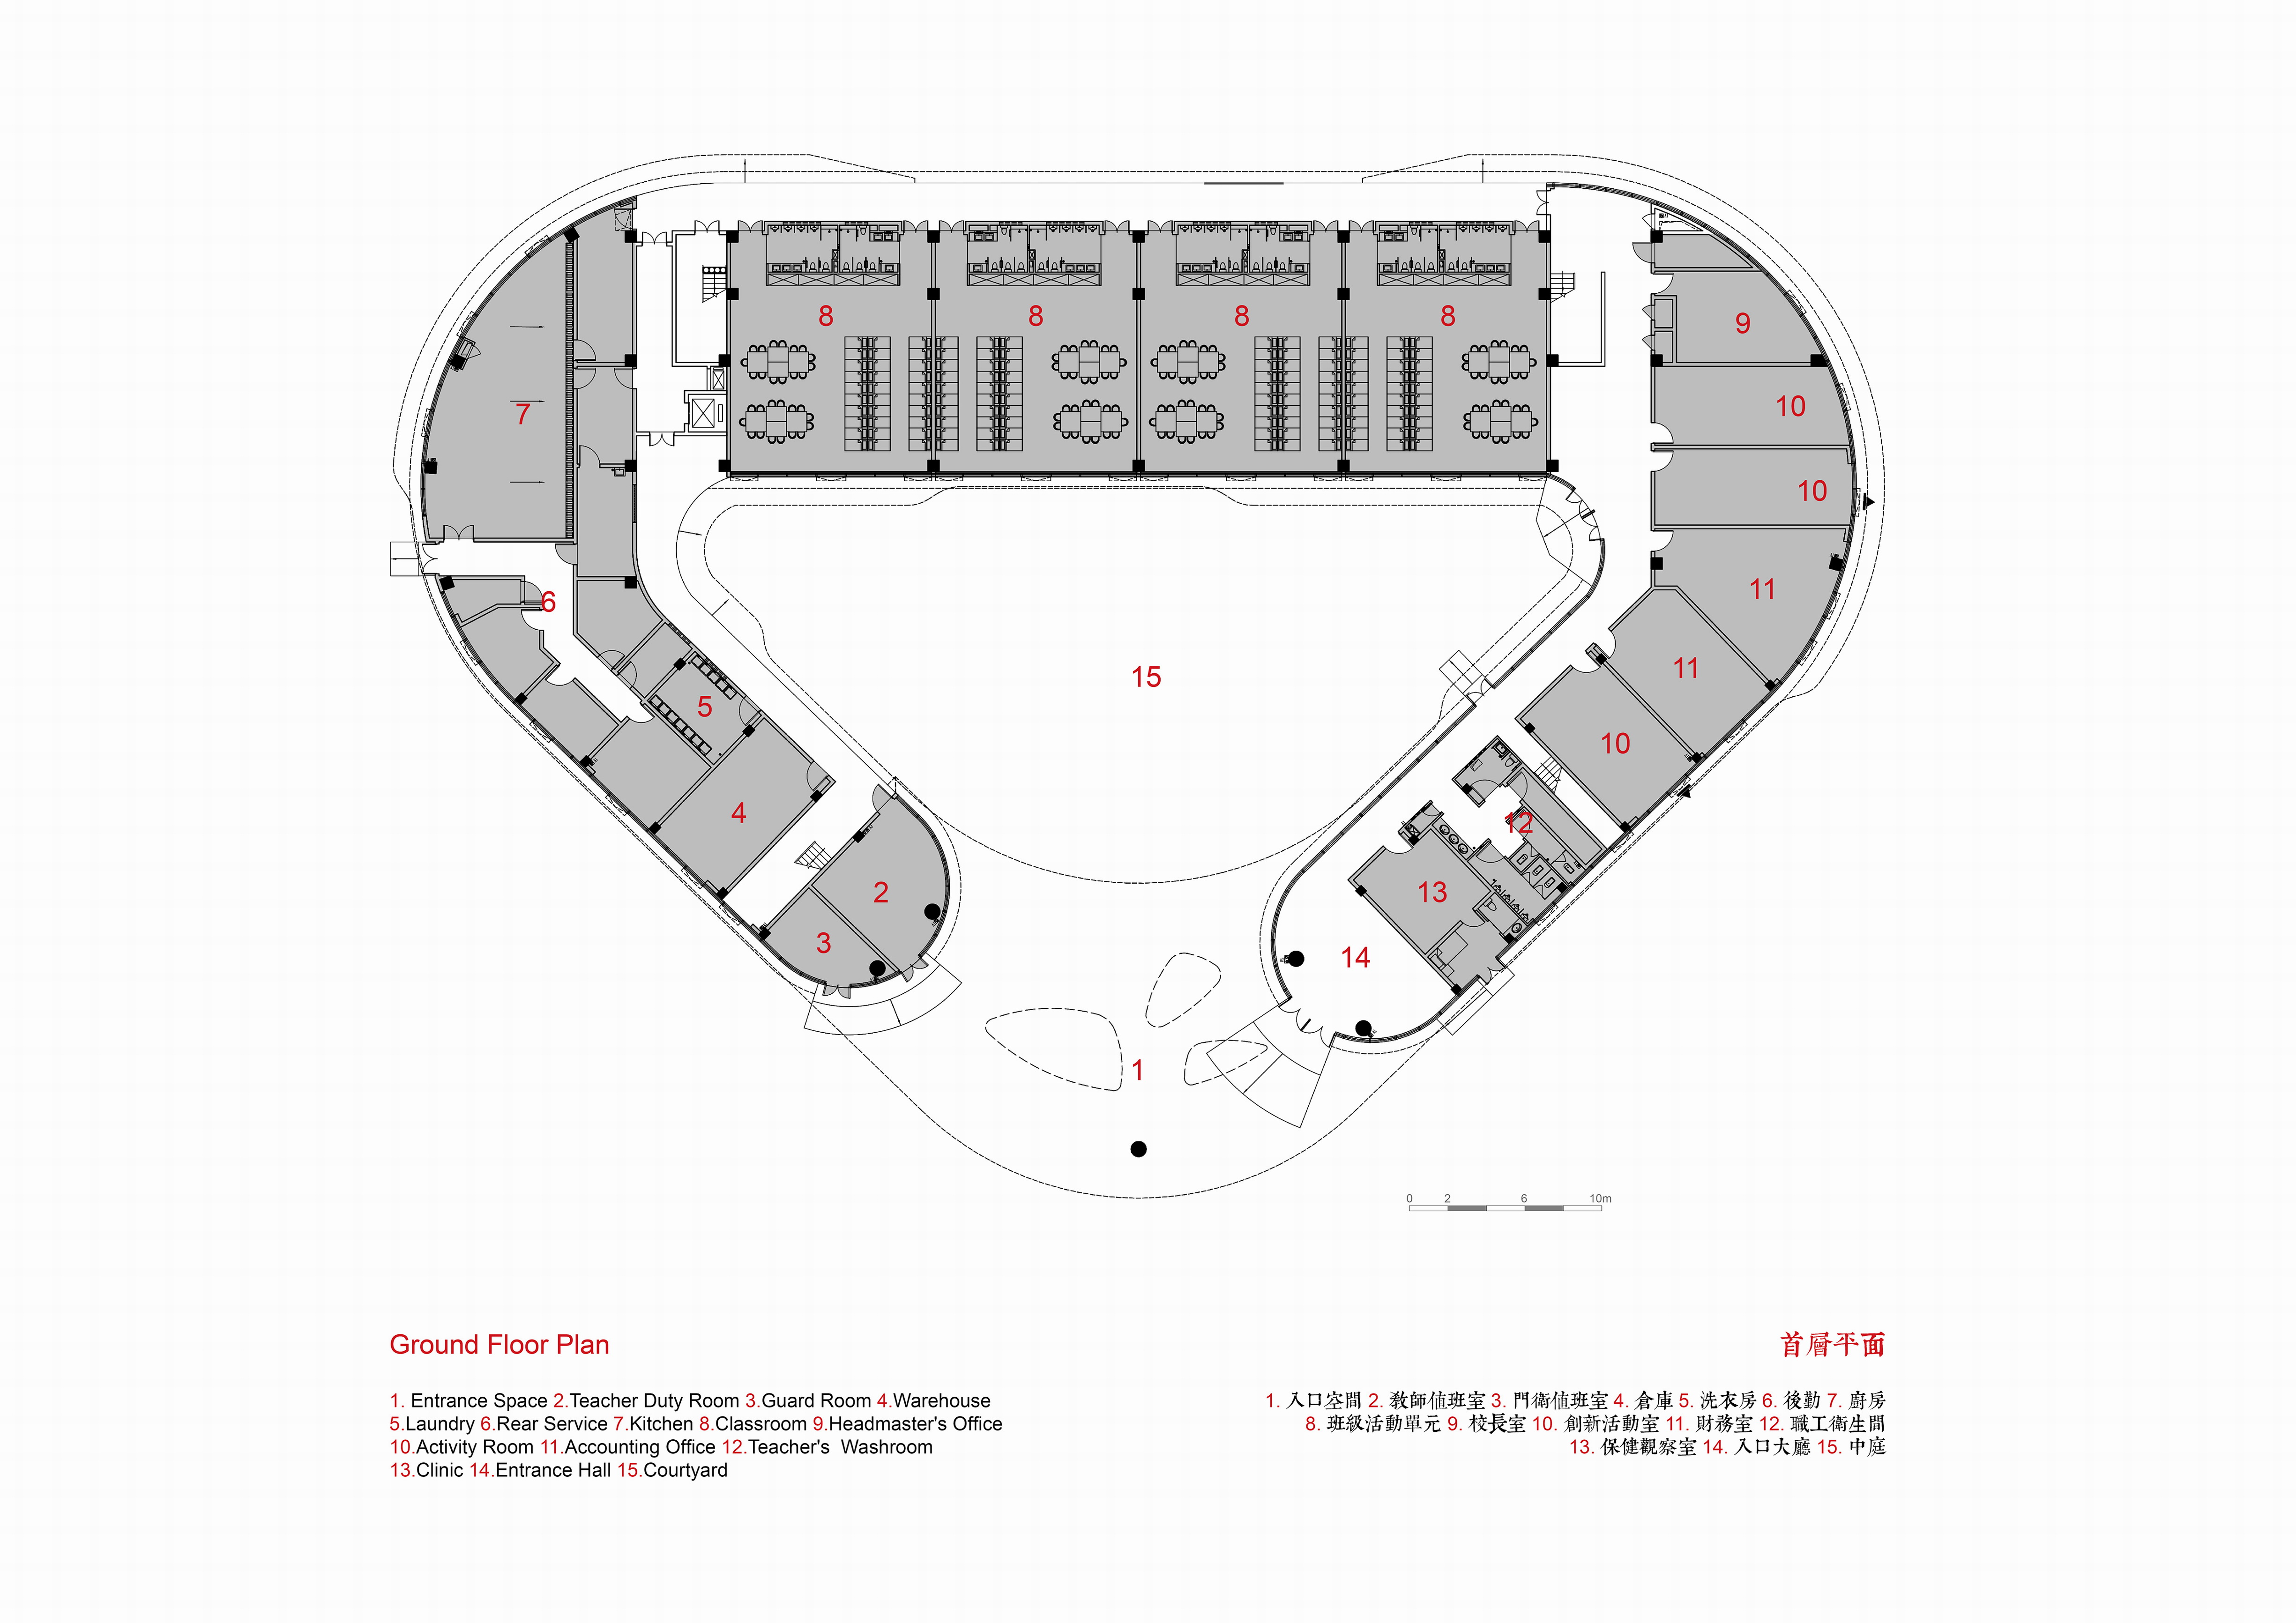 02. 旭辉甜甜圈幼儿园 一层平面图 CIFI Donut Kindergarten Ground Floor Plan.jpg